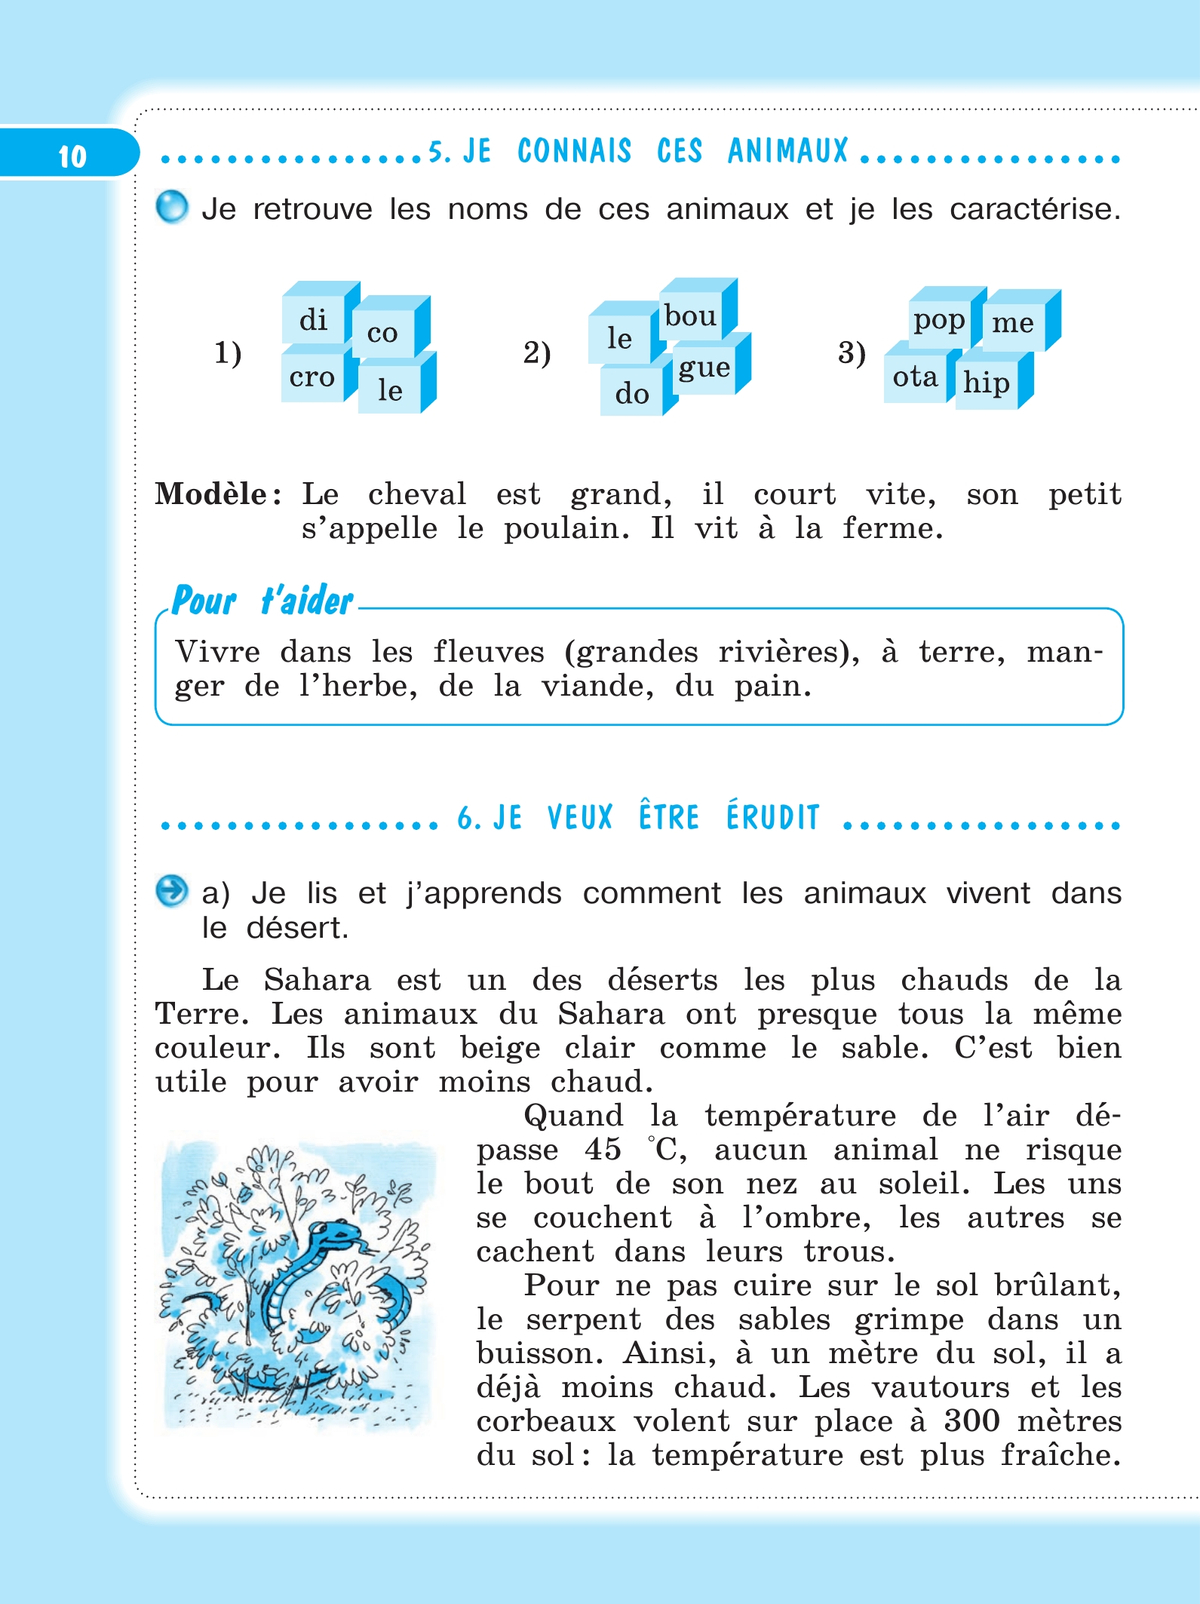 Французский язык. Рабочая тетрадь. 4 класс. 4